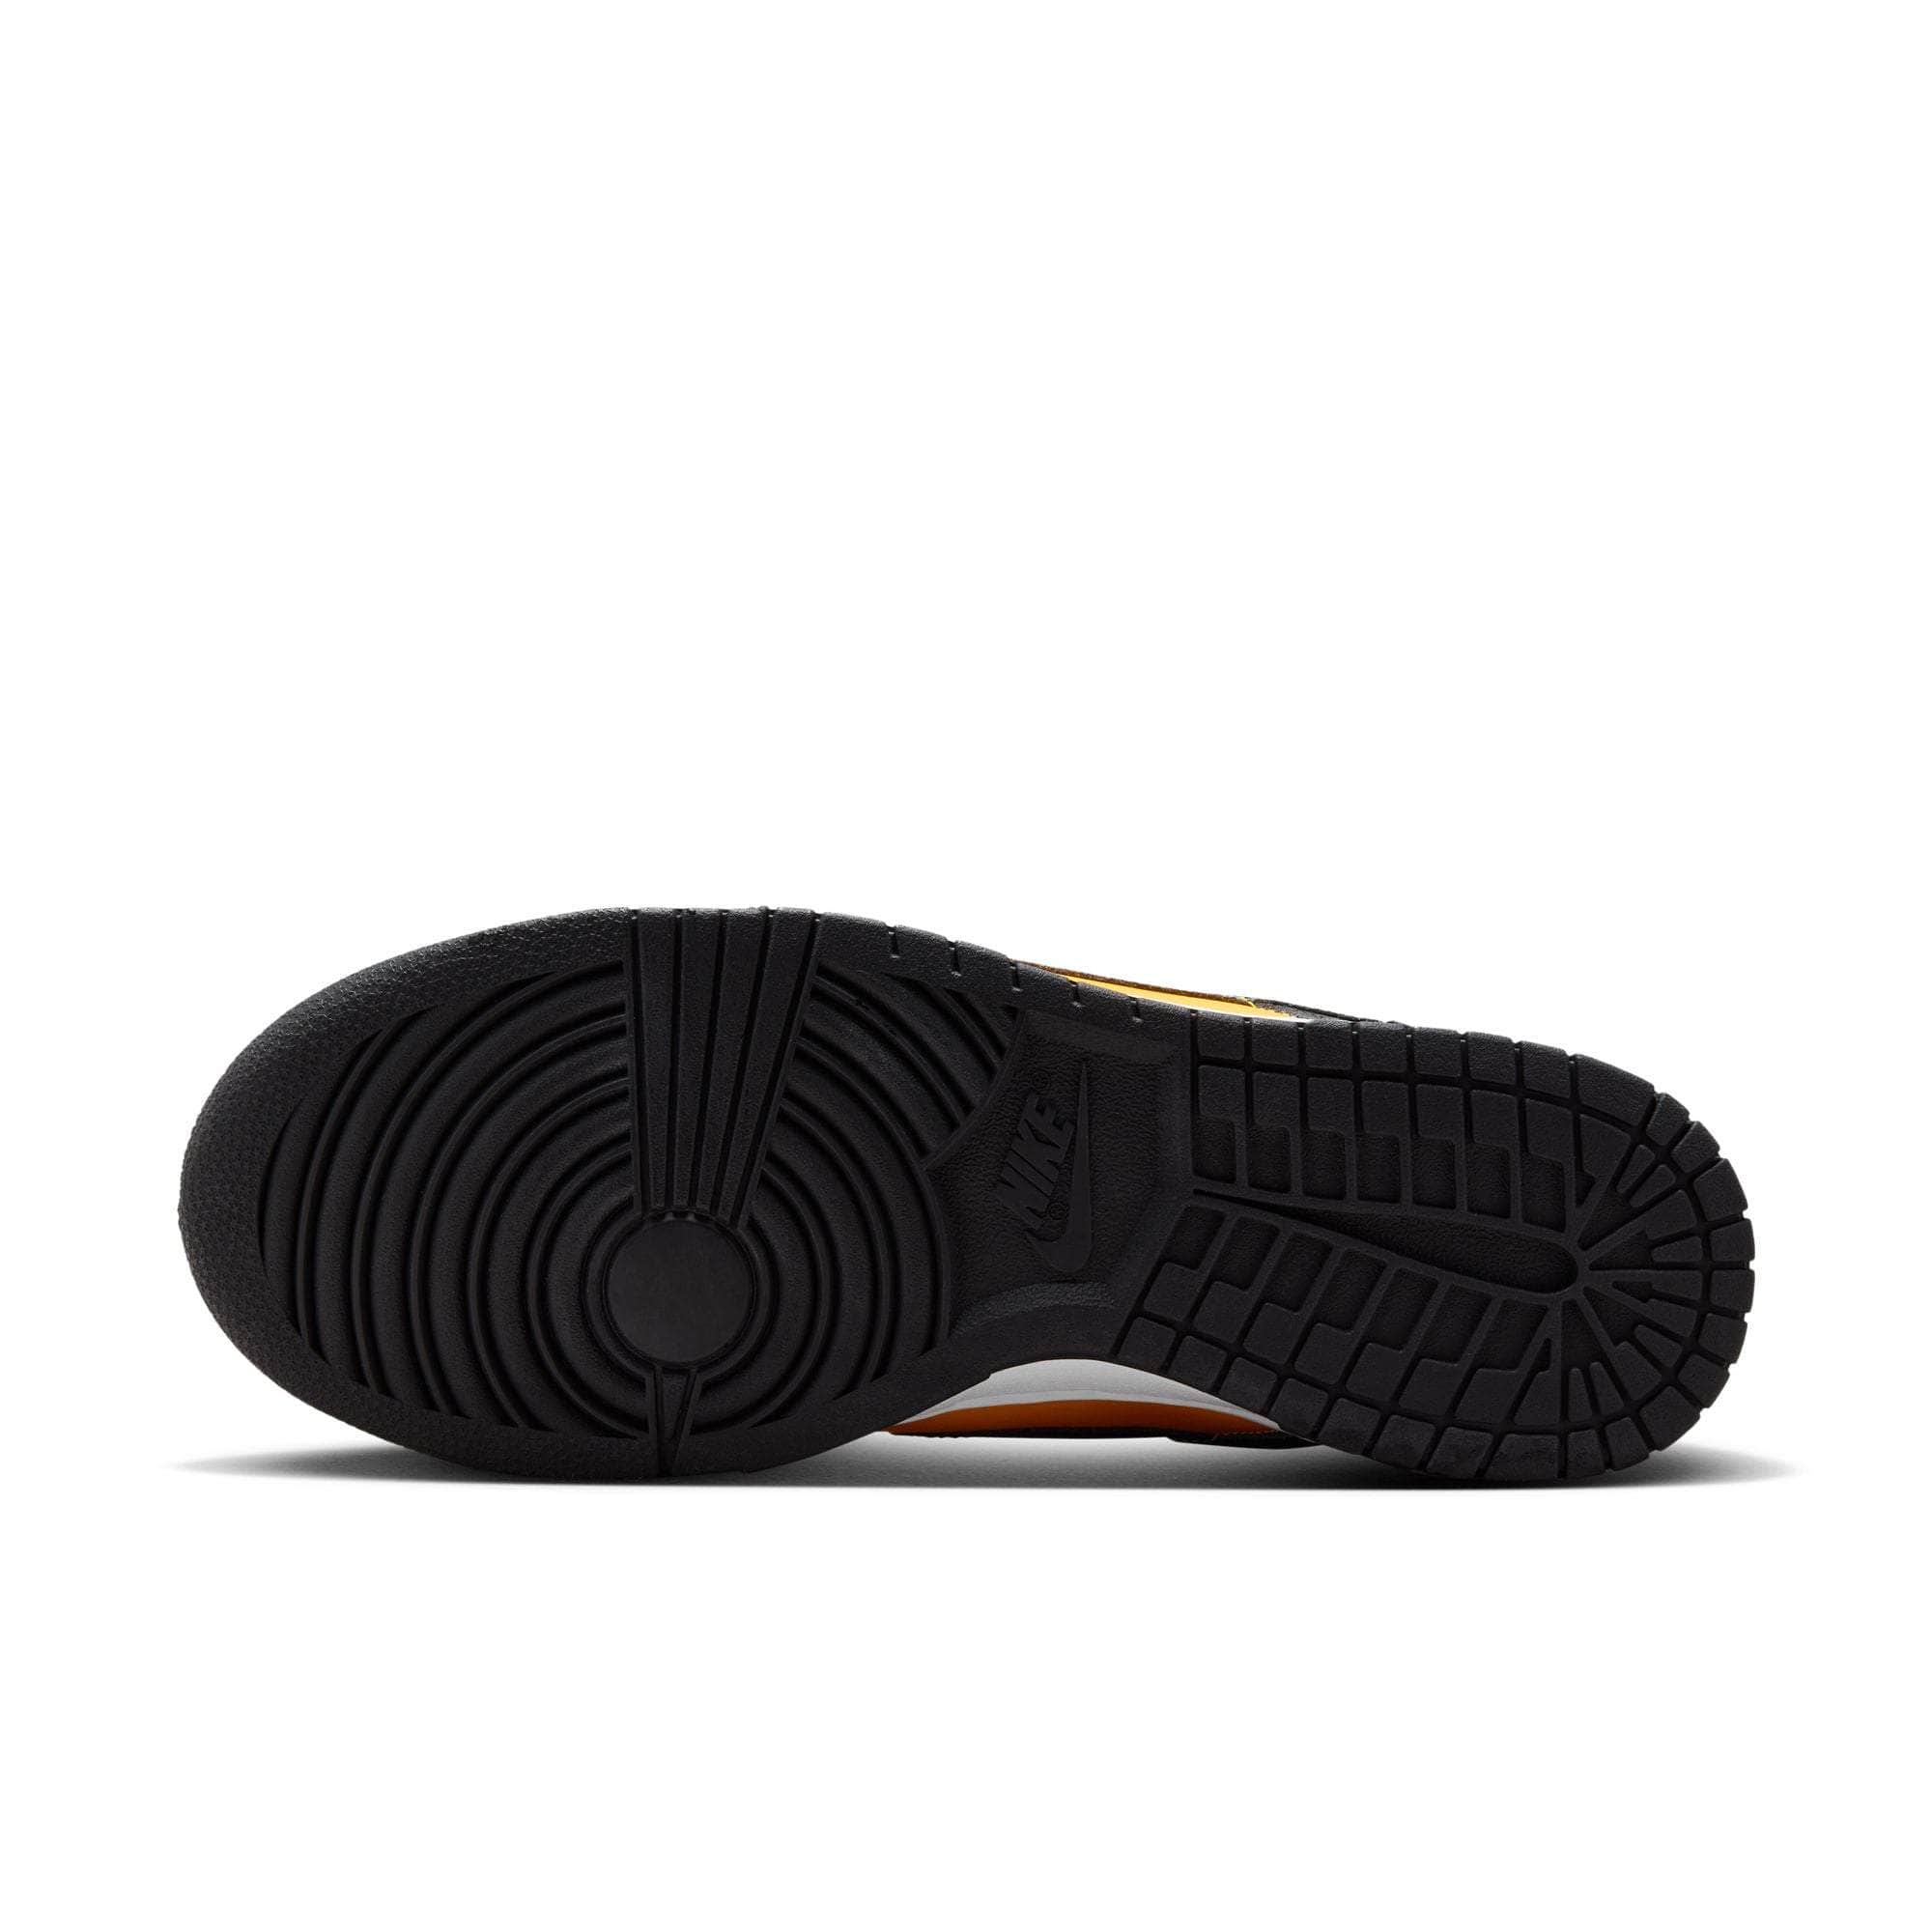 Nike FOOTWEAR Nike Dunk Low "Reverse Goldenrod" - Men's